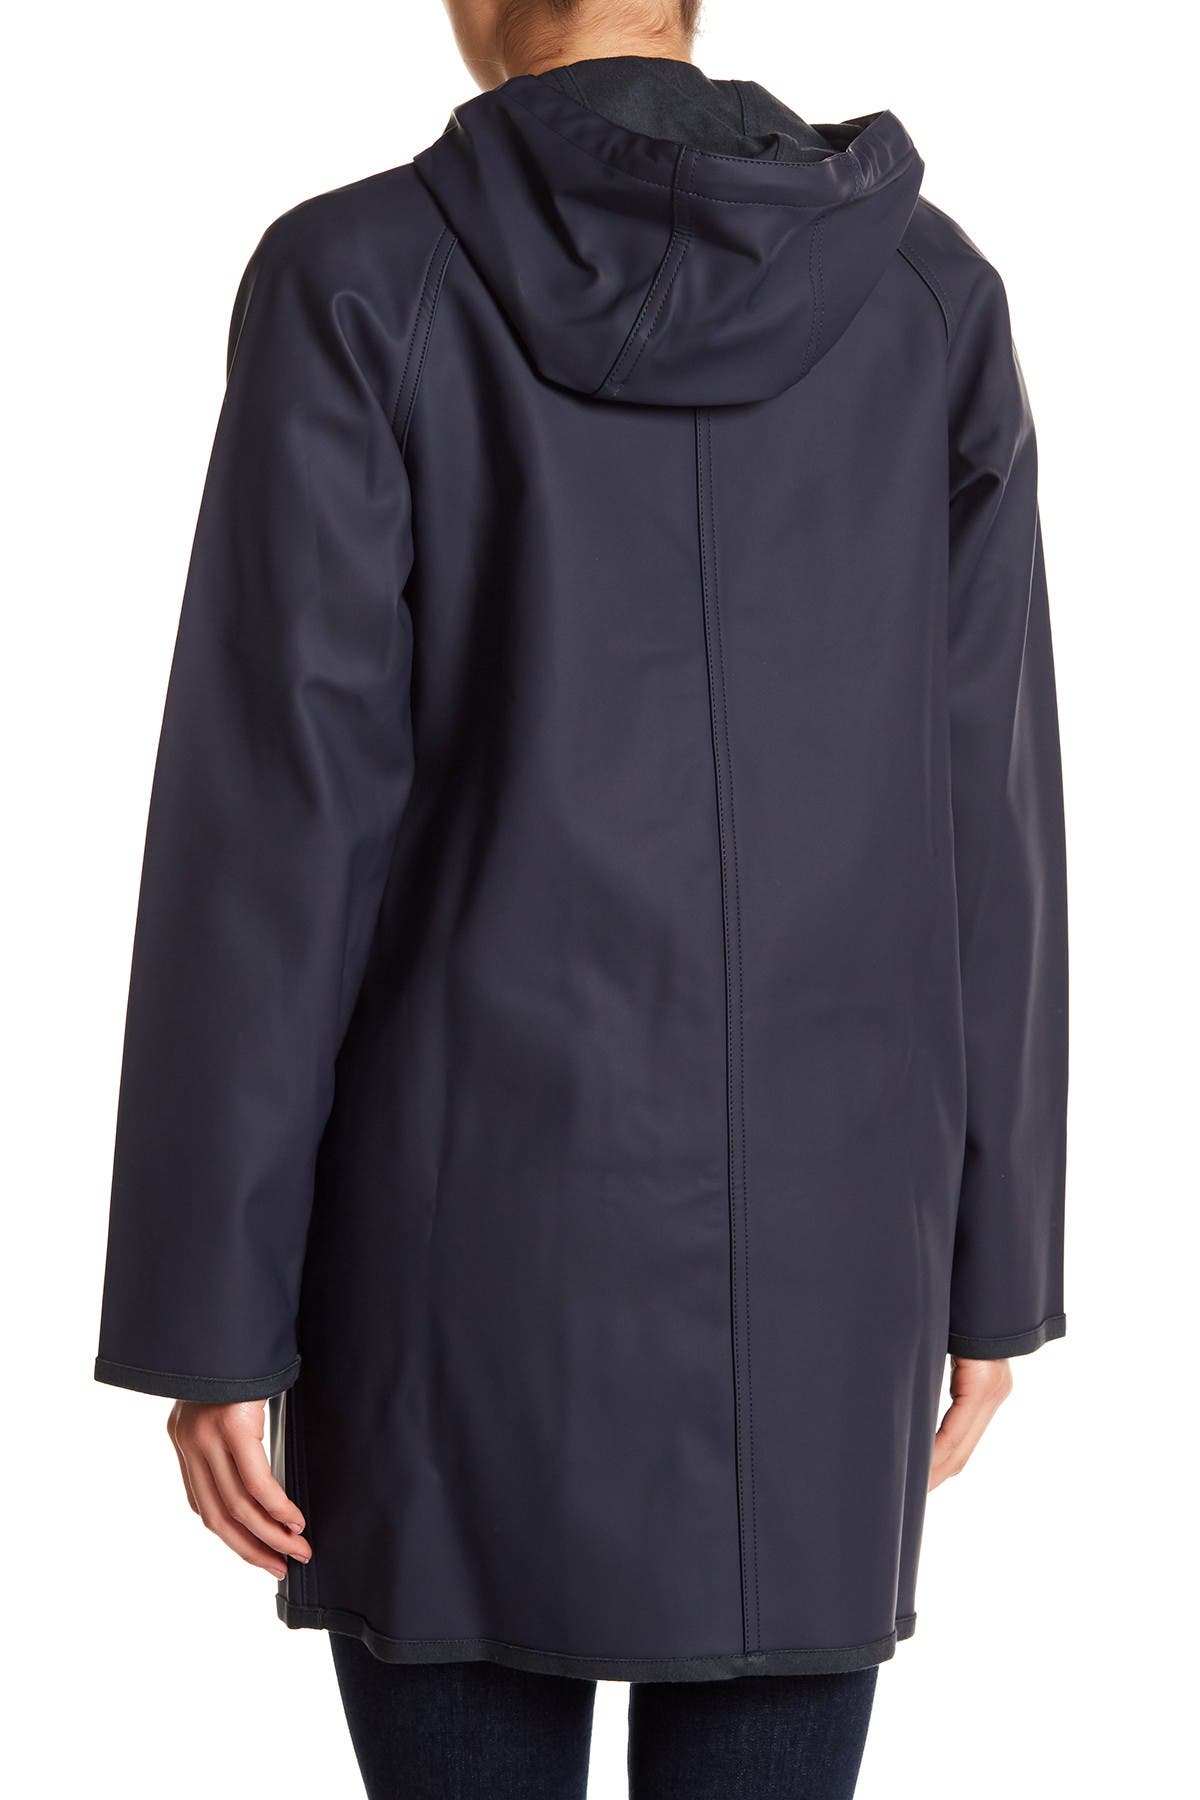 levis waterproof raincoat